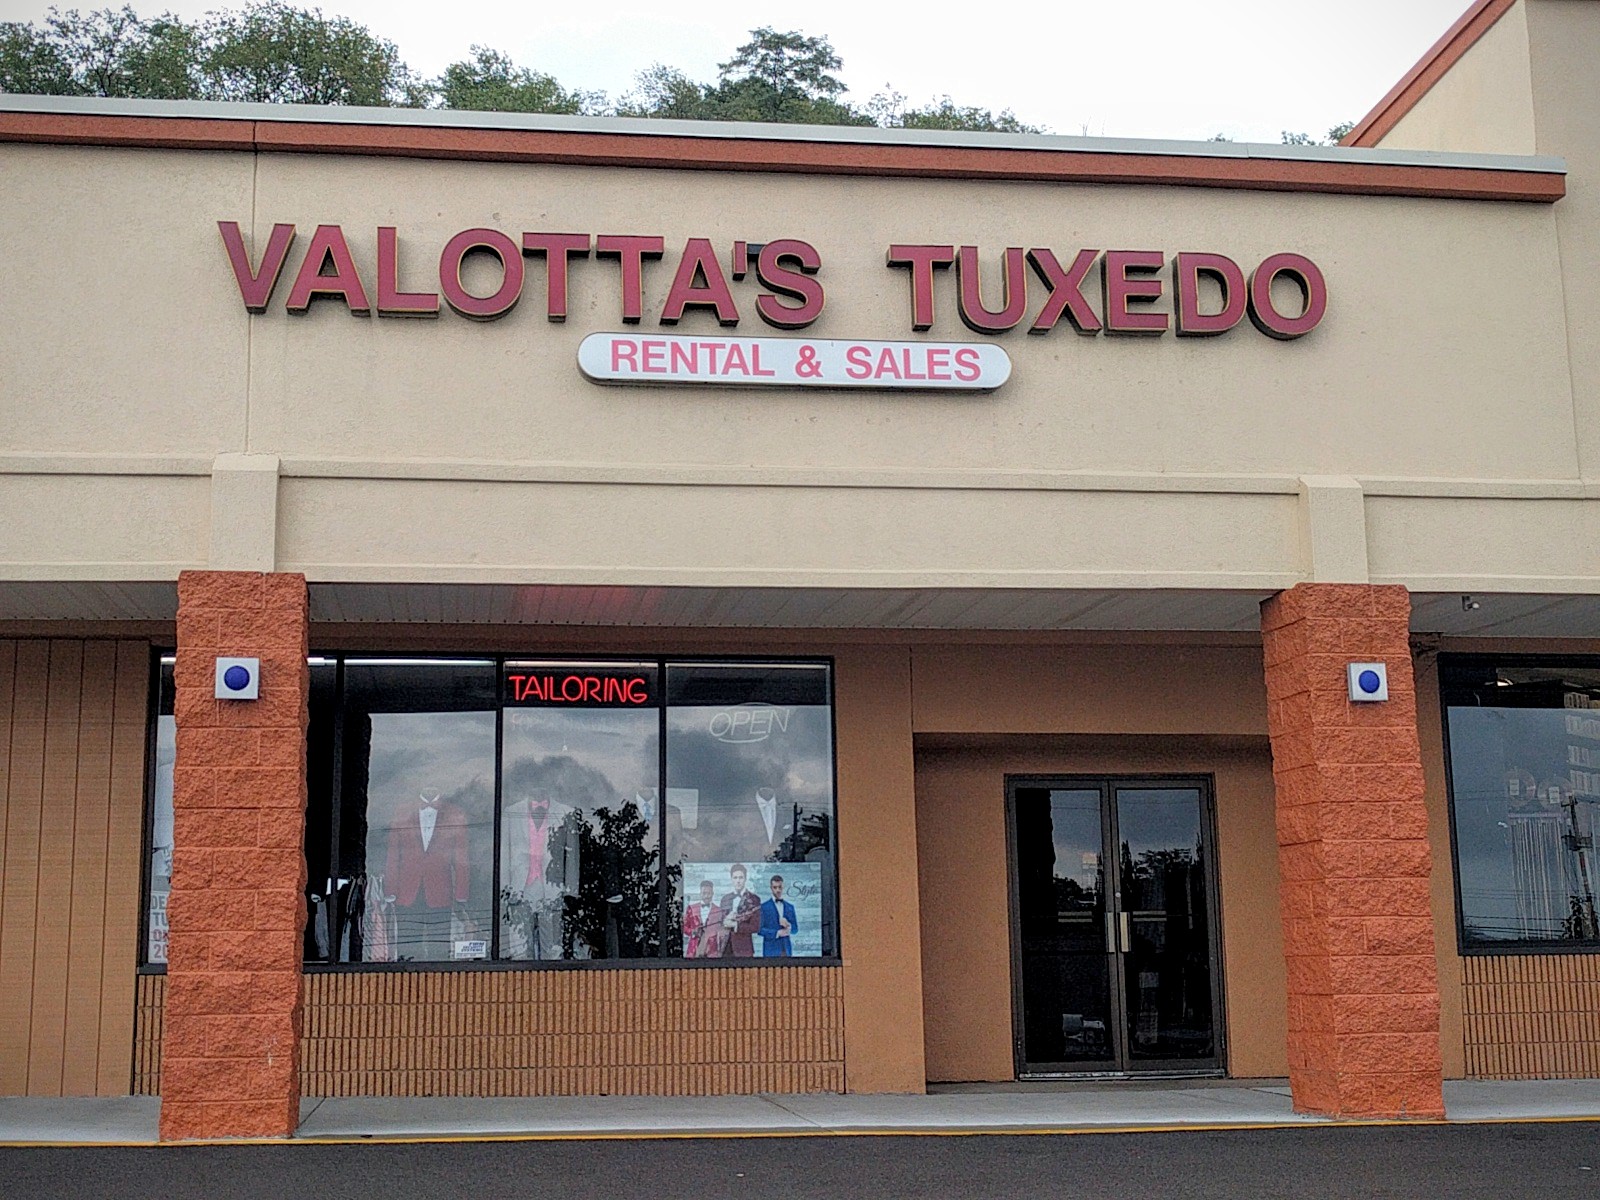 Valotta's Tuxedo